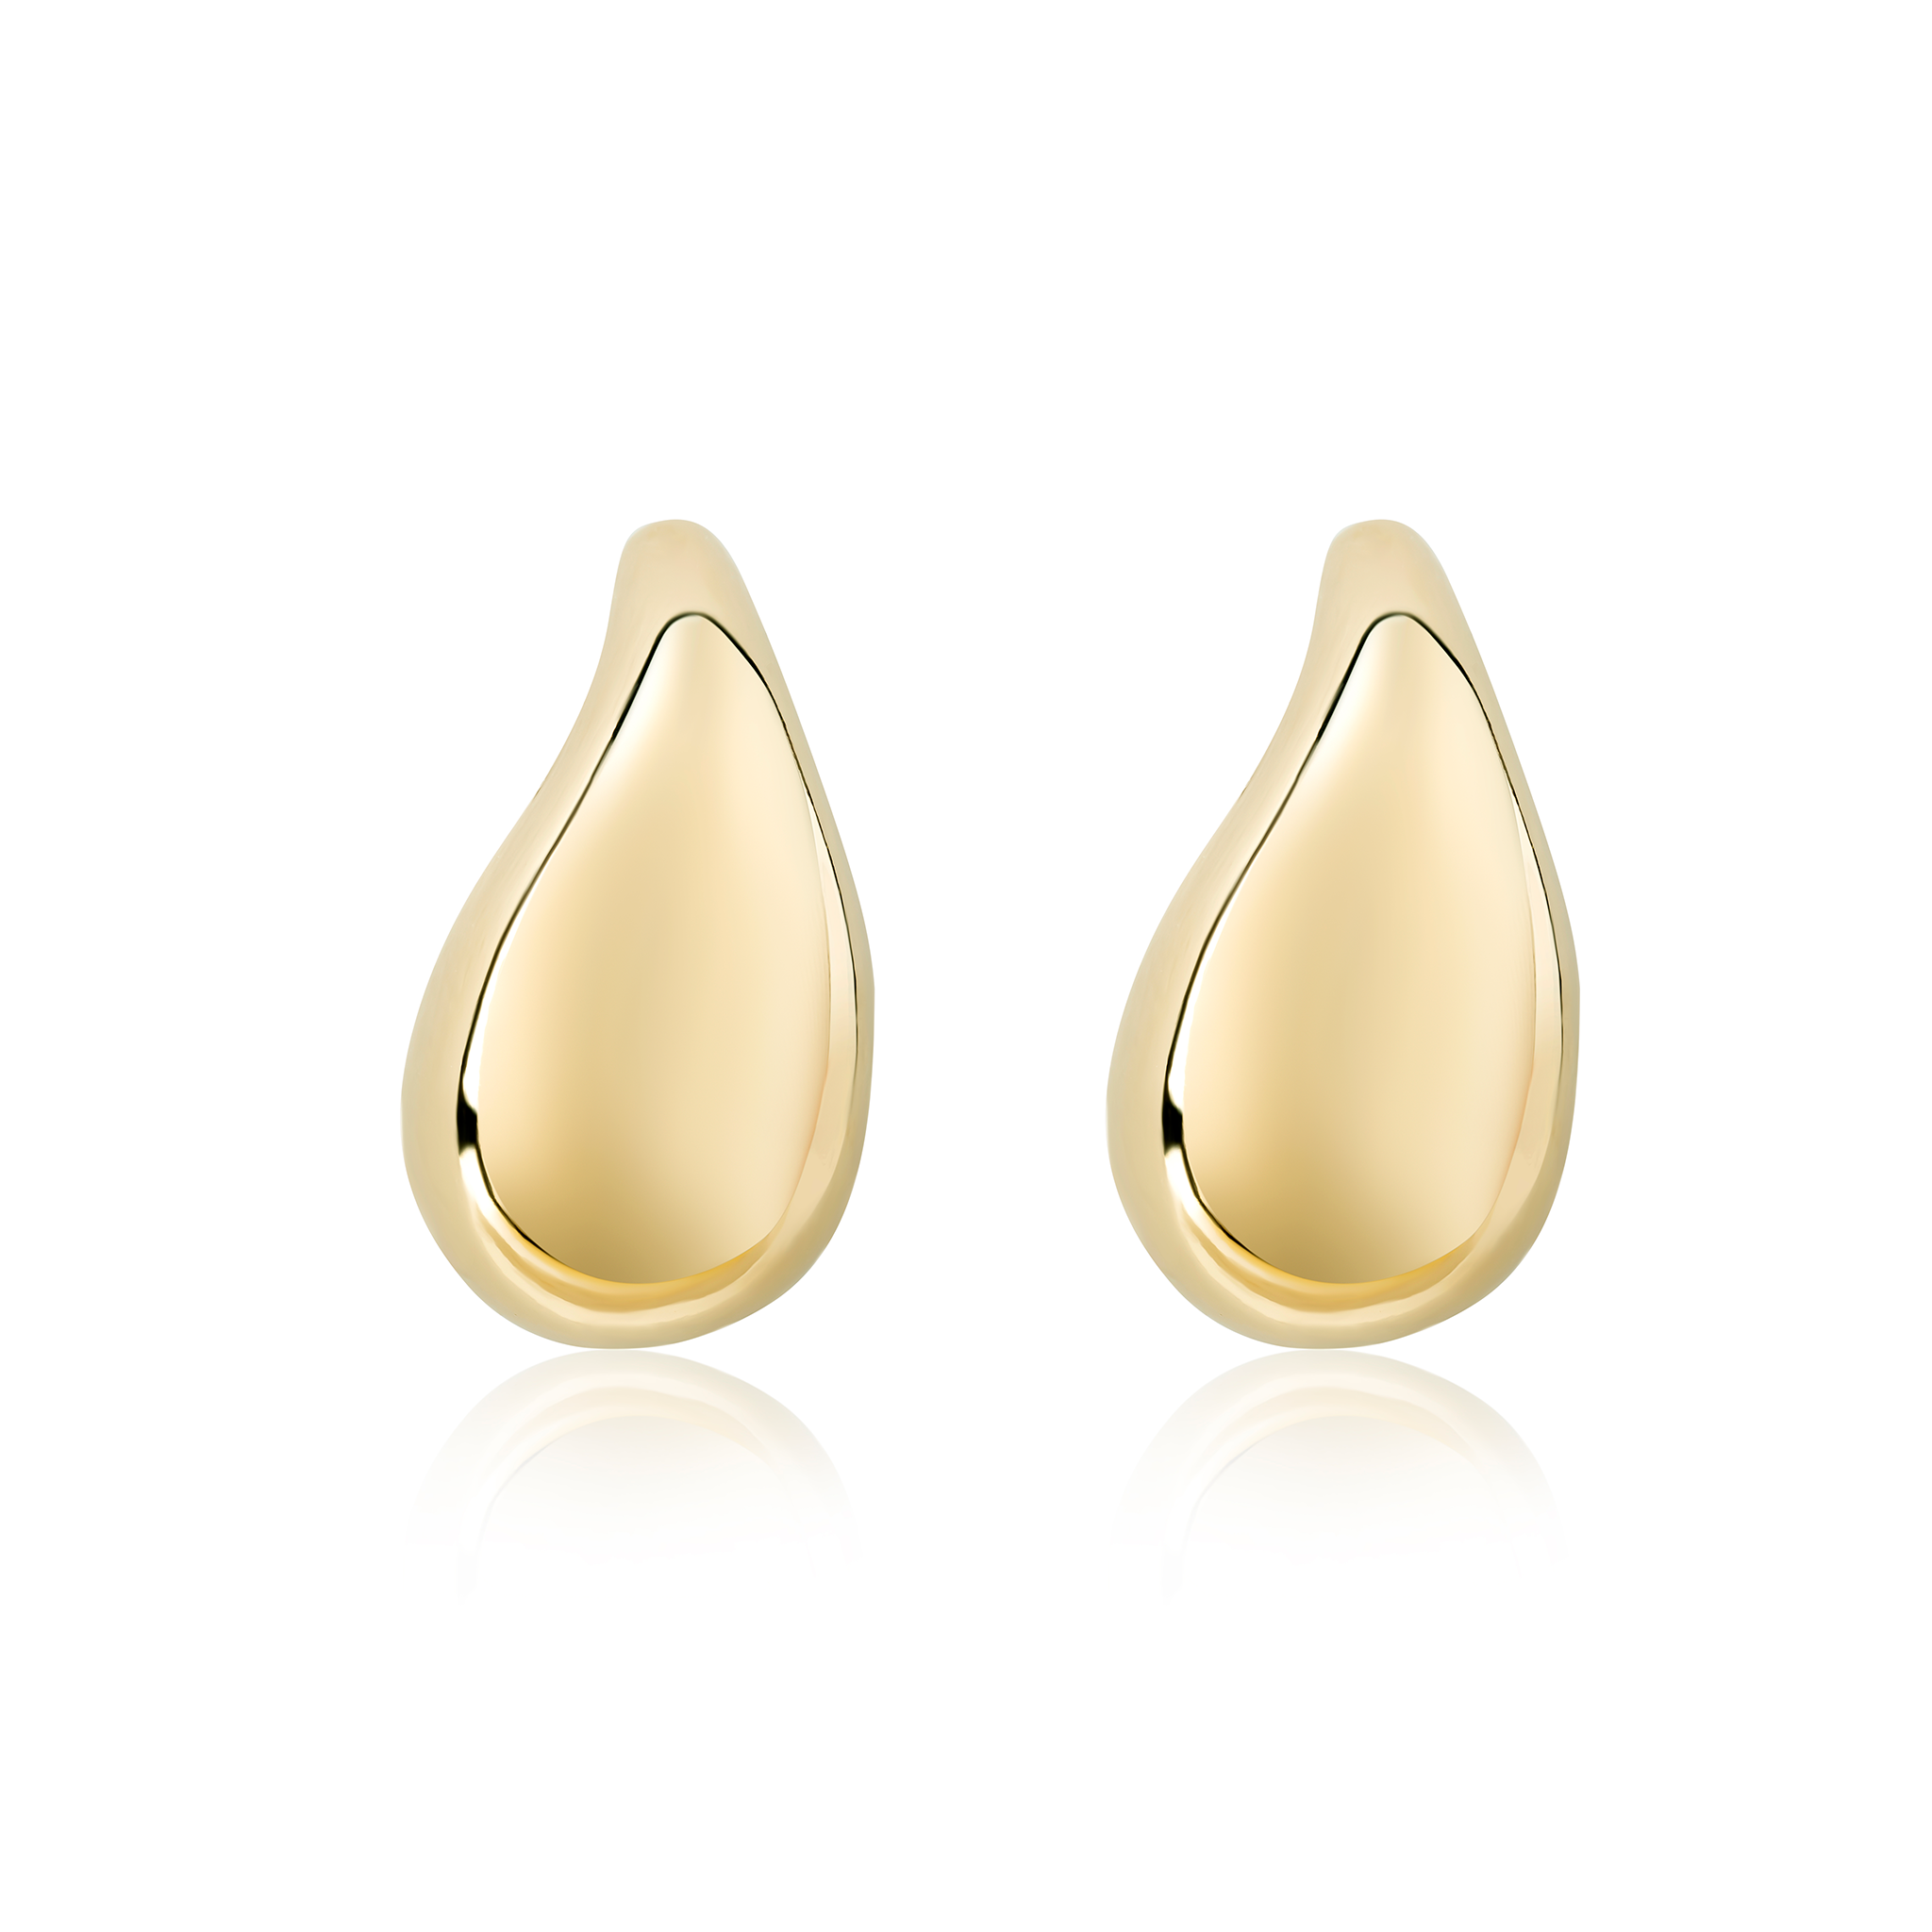 Cali Tear Drop Earrings Gold Filled E400